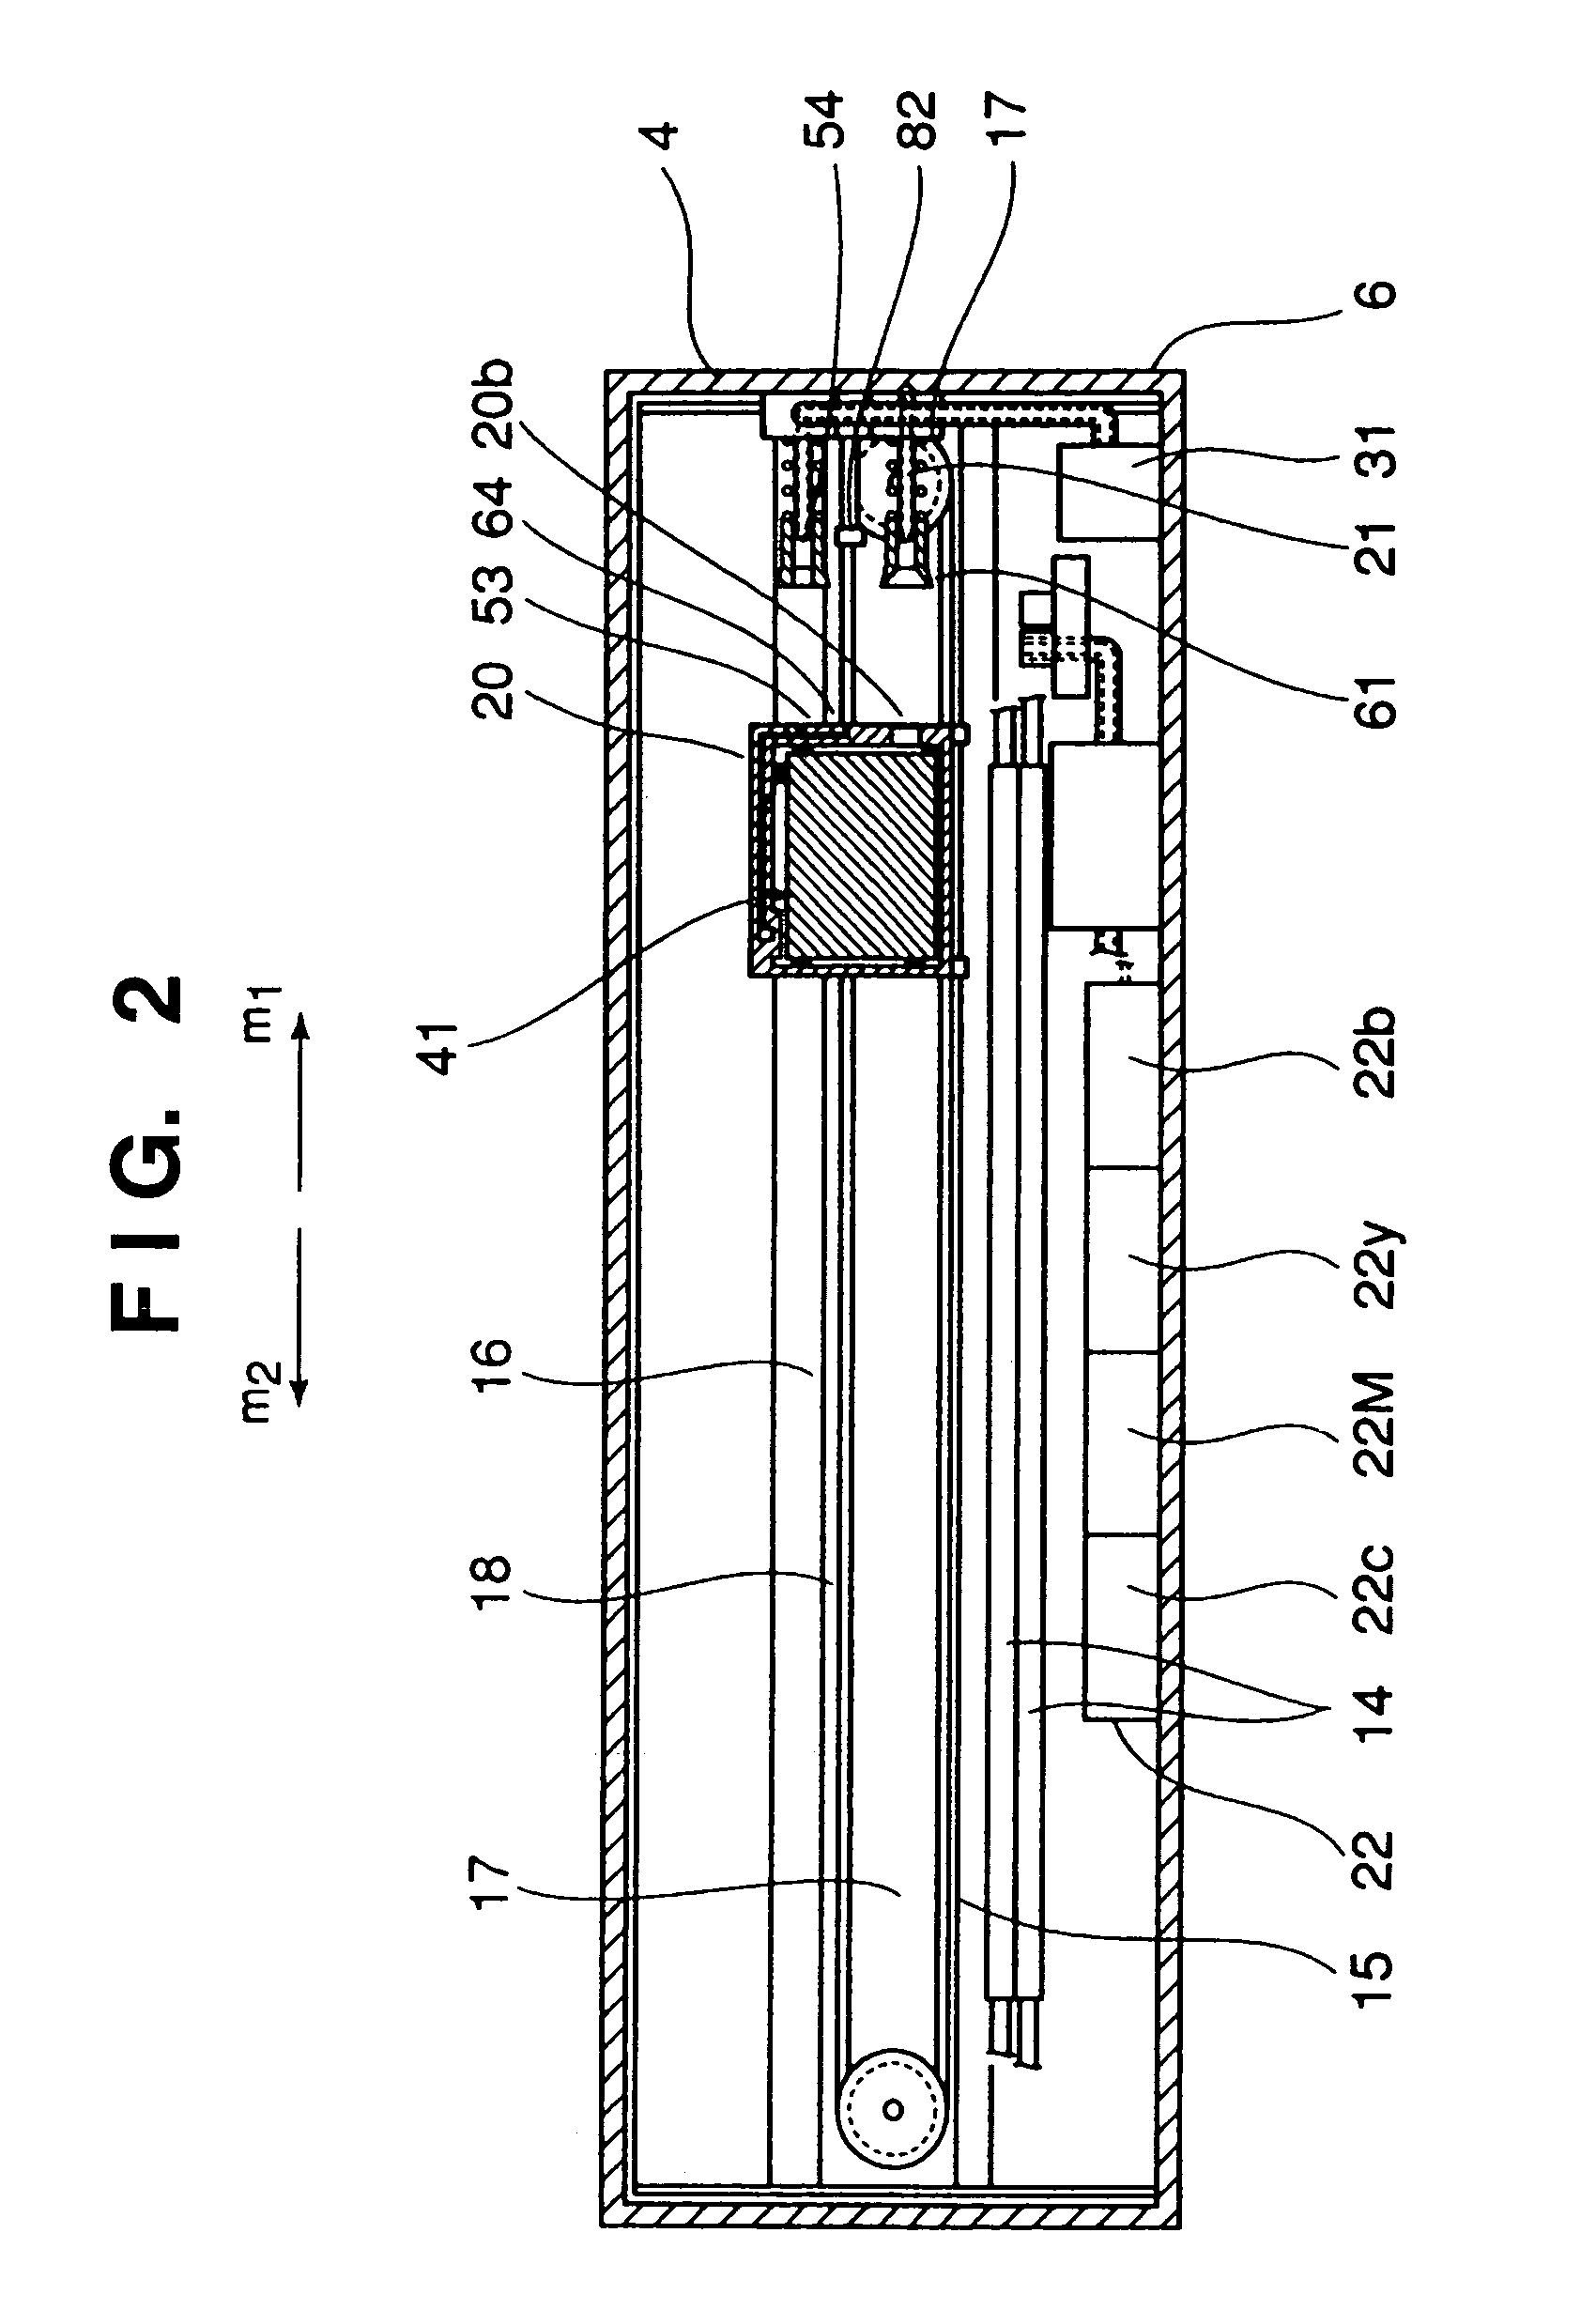 Liquid reservoir apparatus